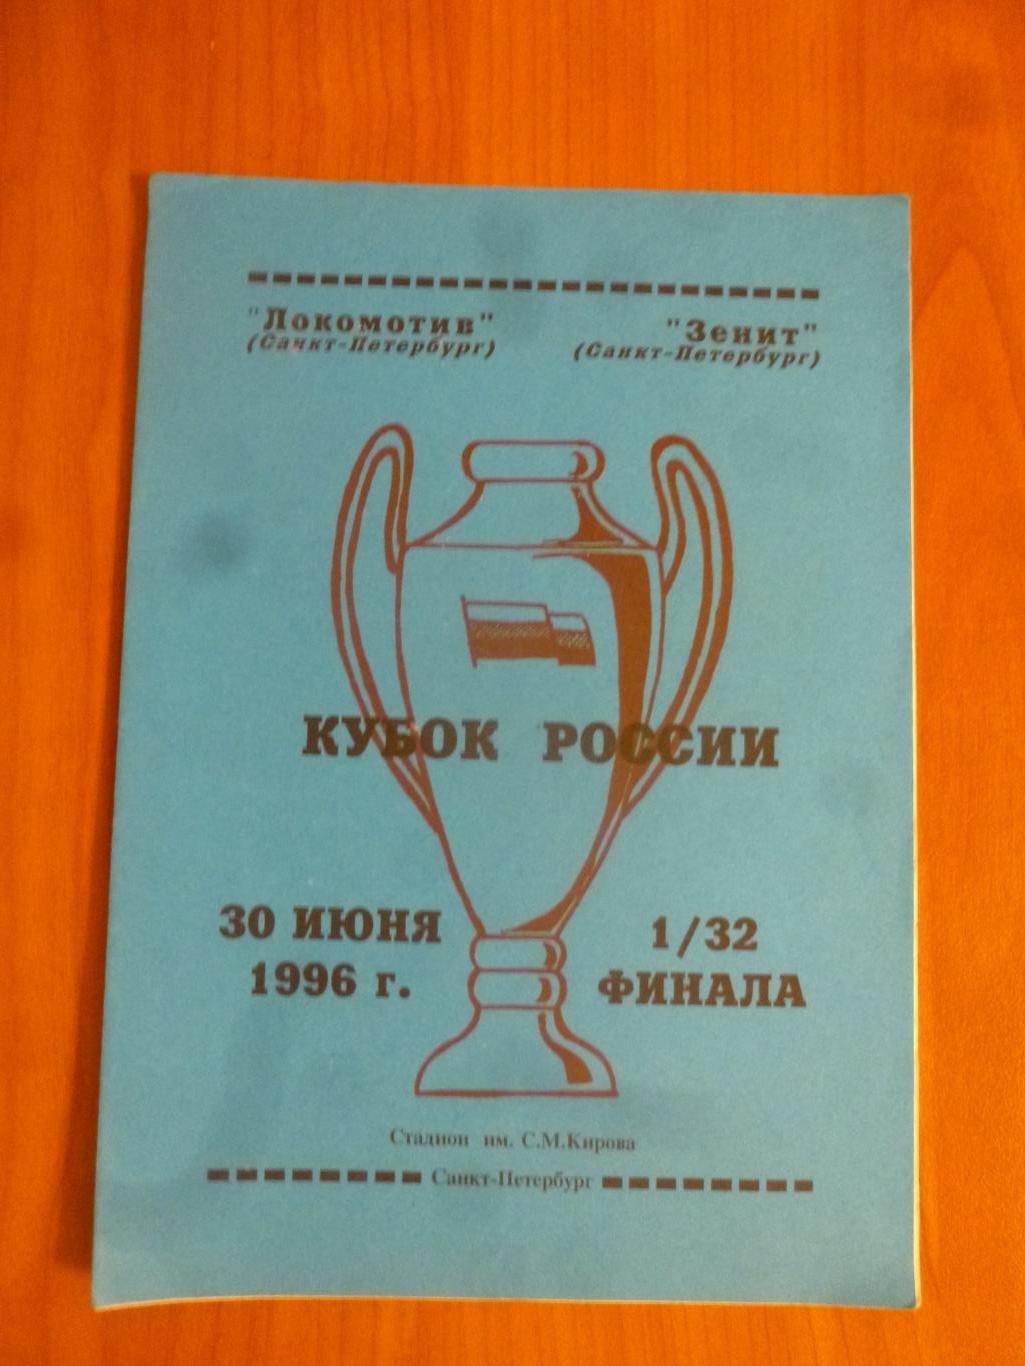 Зенит Санкт-Петербург - Локомотив Санкт-Петербург 1996 Кубок России (синяя)